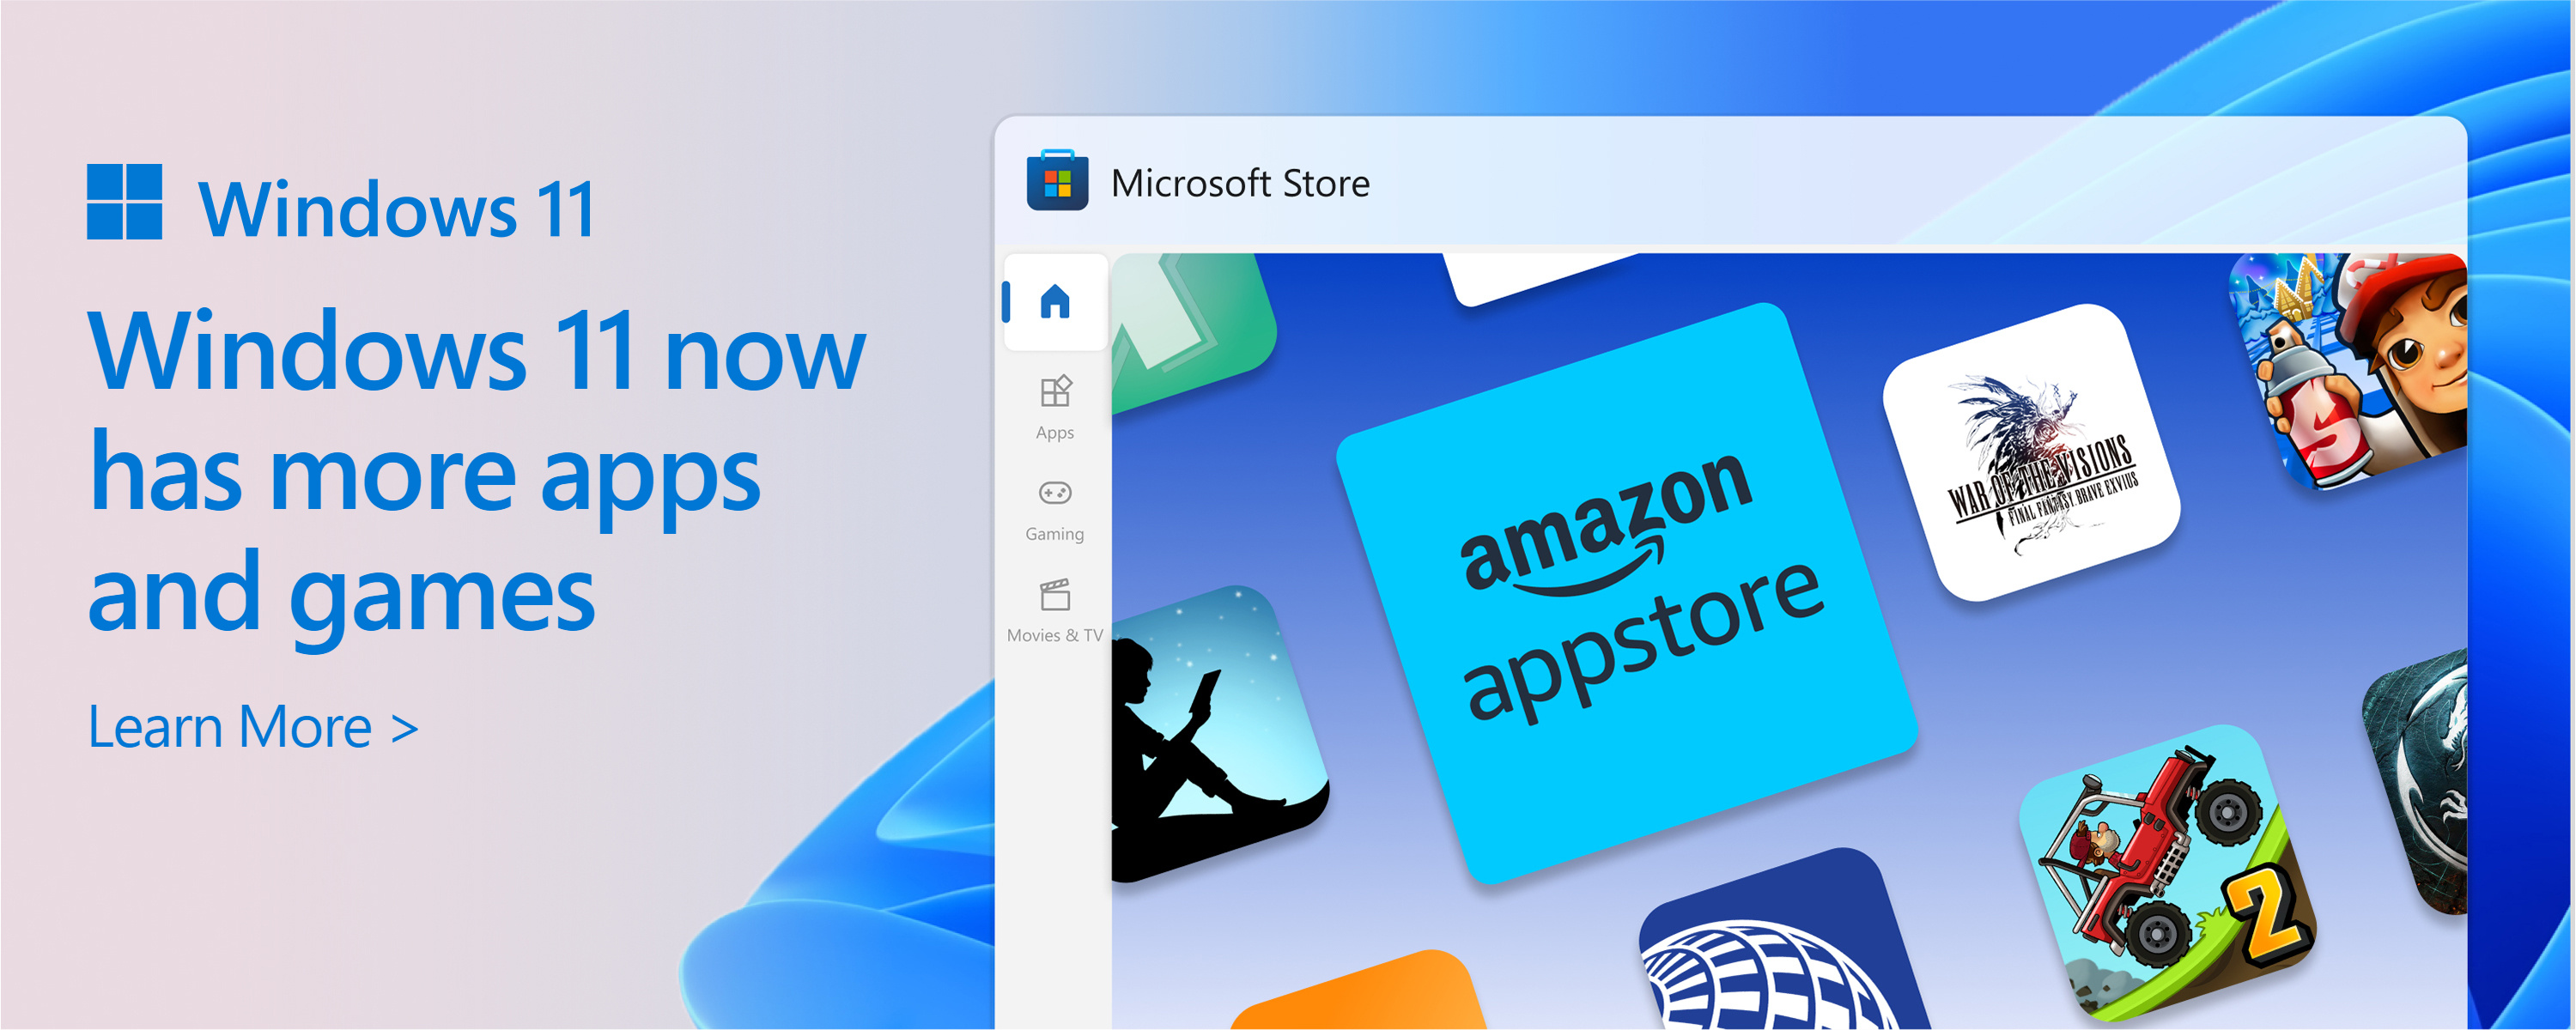 Zrzut ekranu przedstawiający sklep Microsoft Store z tekstem: Katalog Microsoft Store rośnie. Windows 11 oferuje więcej aplikacji i gier, których potrzebujesz.